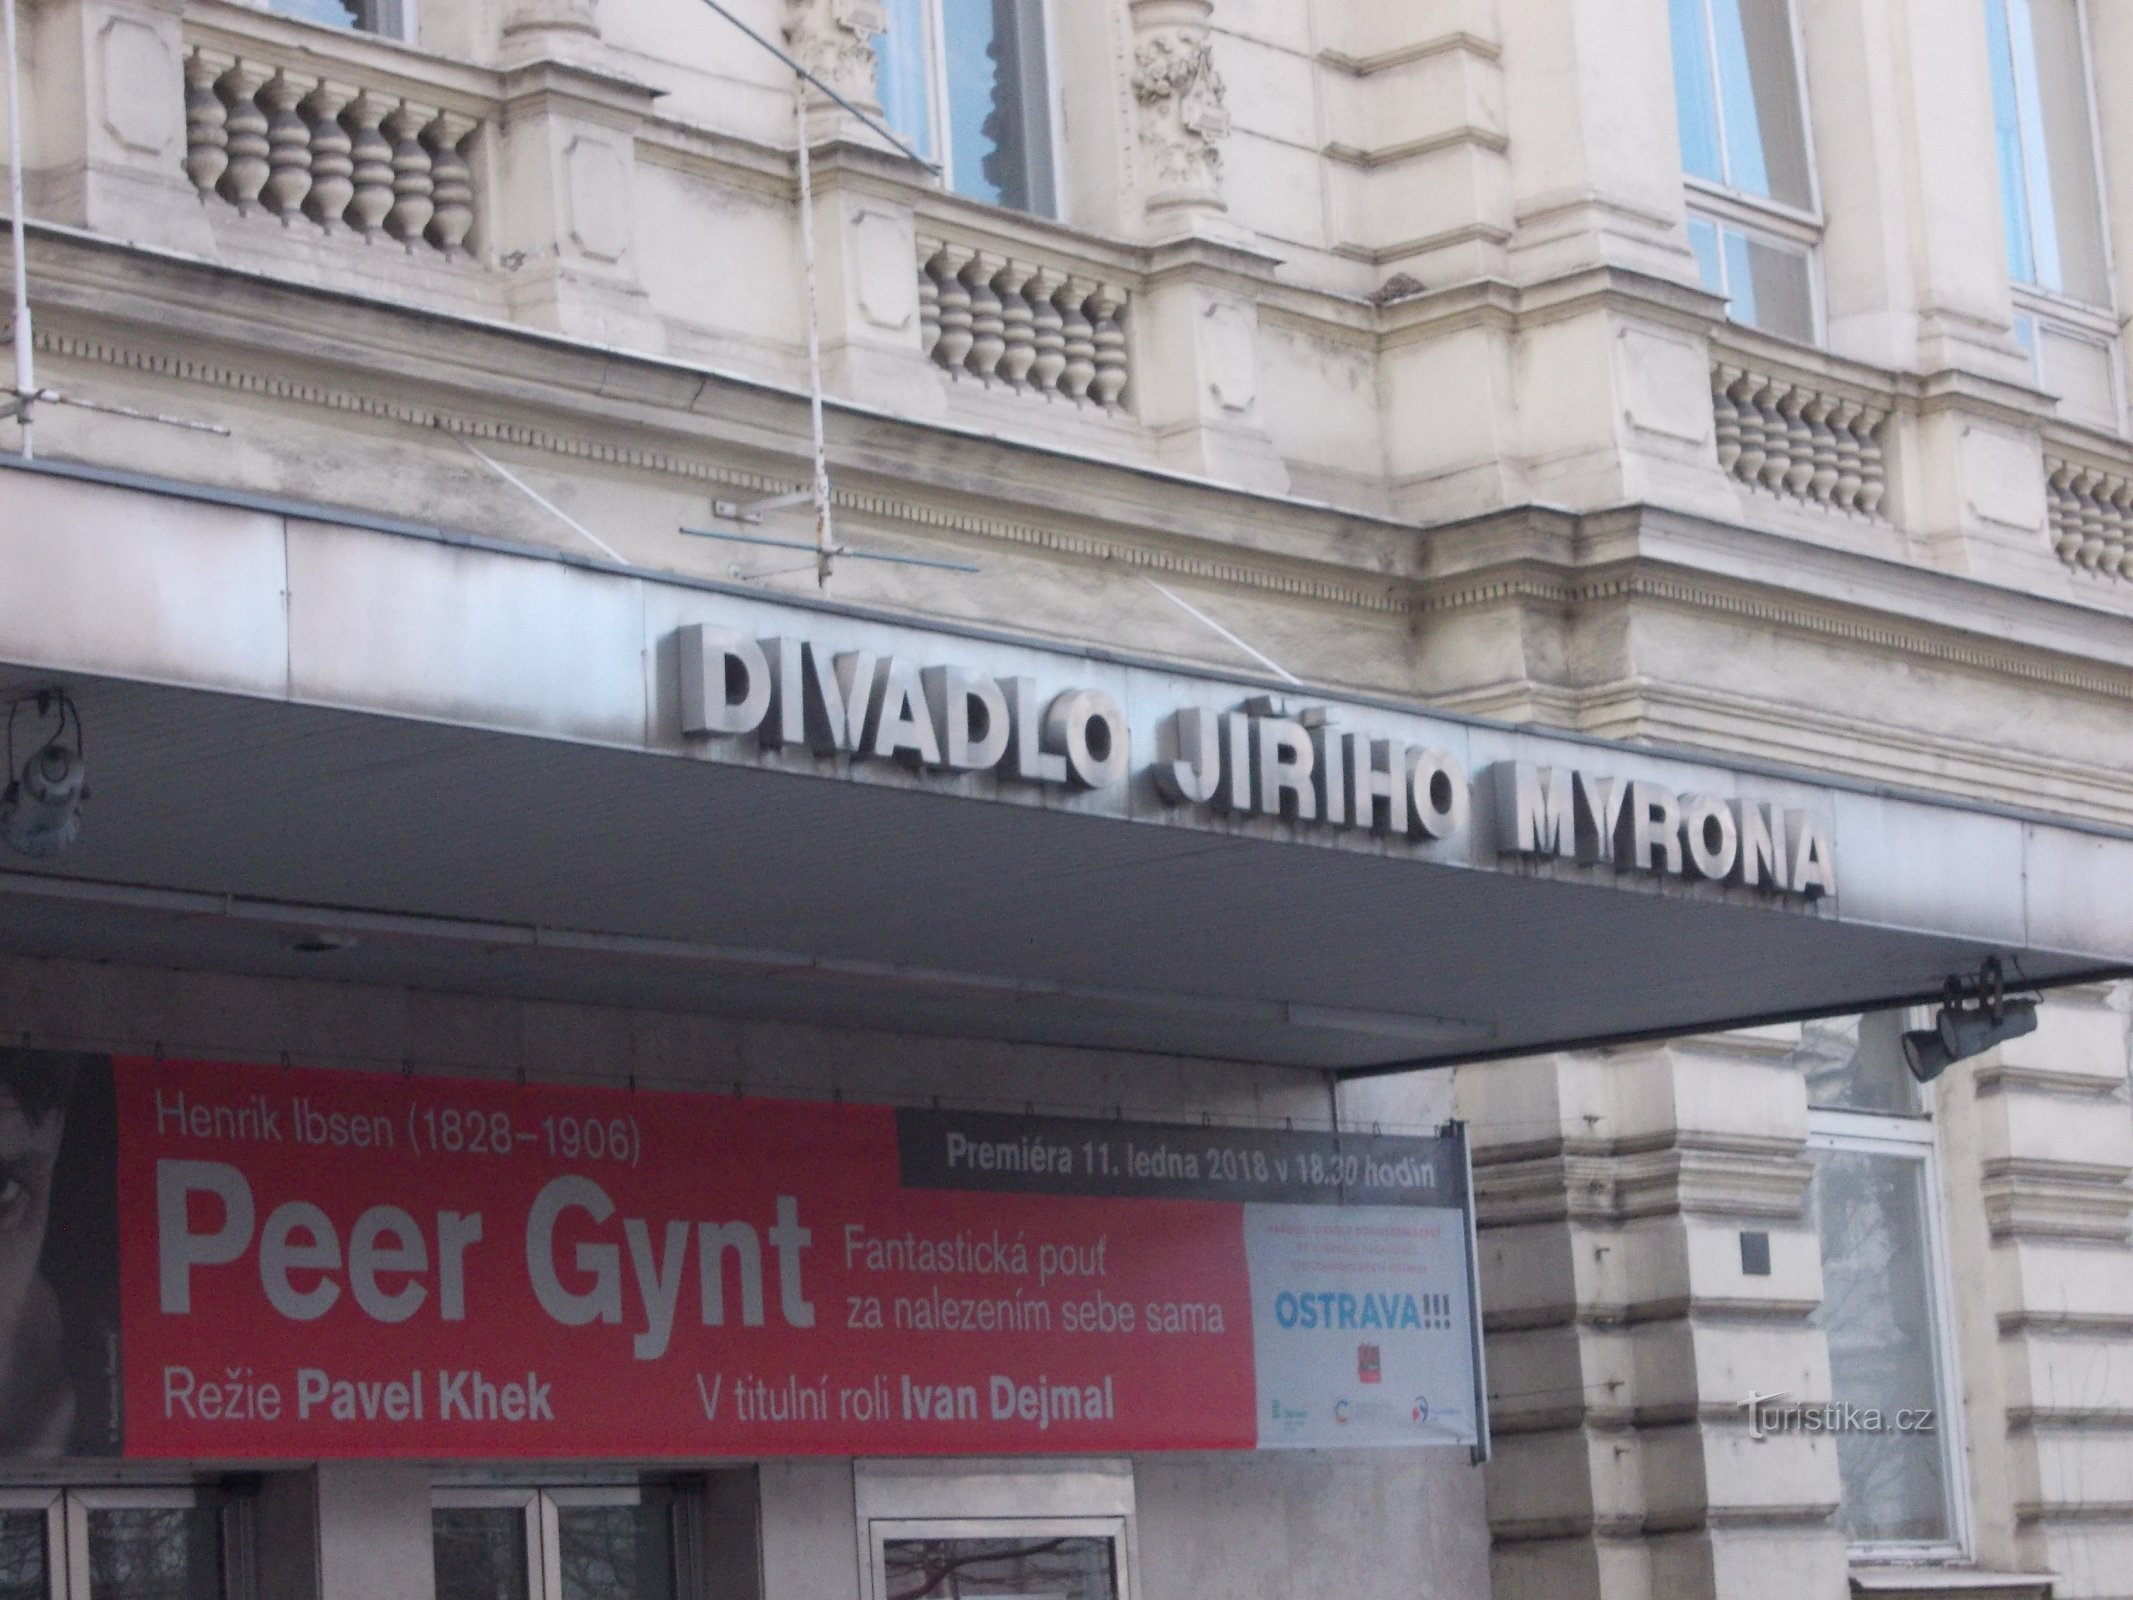 O Teatro Jiří Myron do final do século XIX passou por várias reformas até hoje